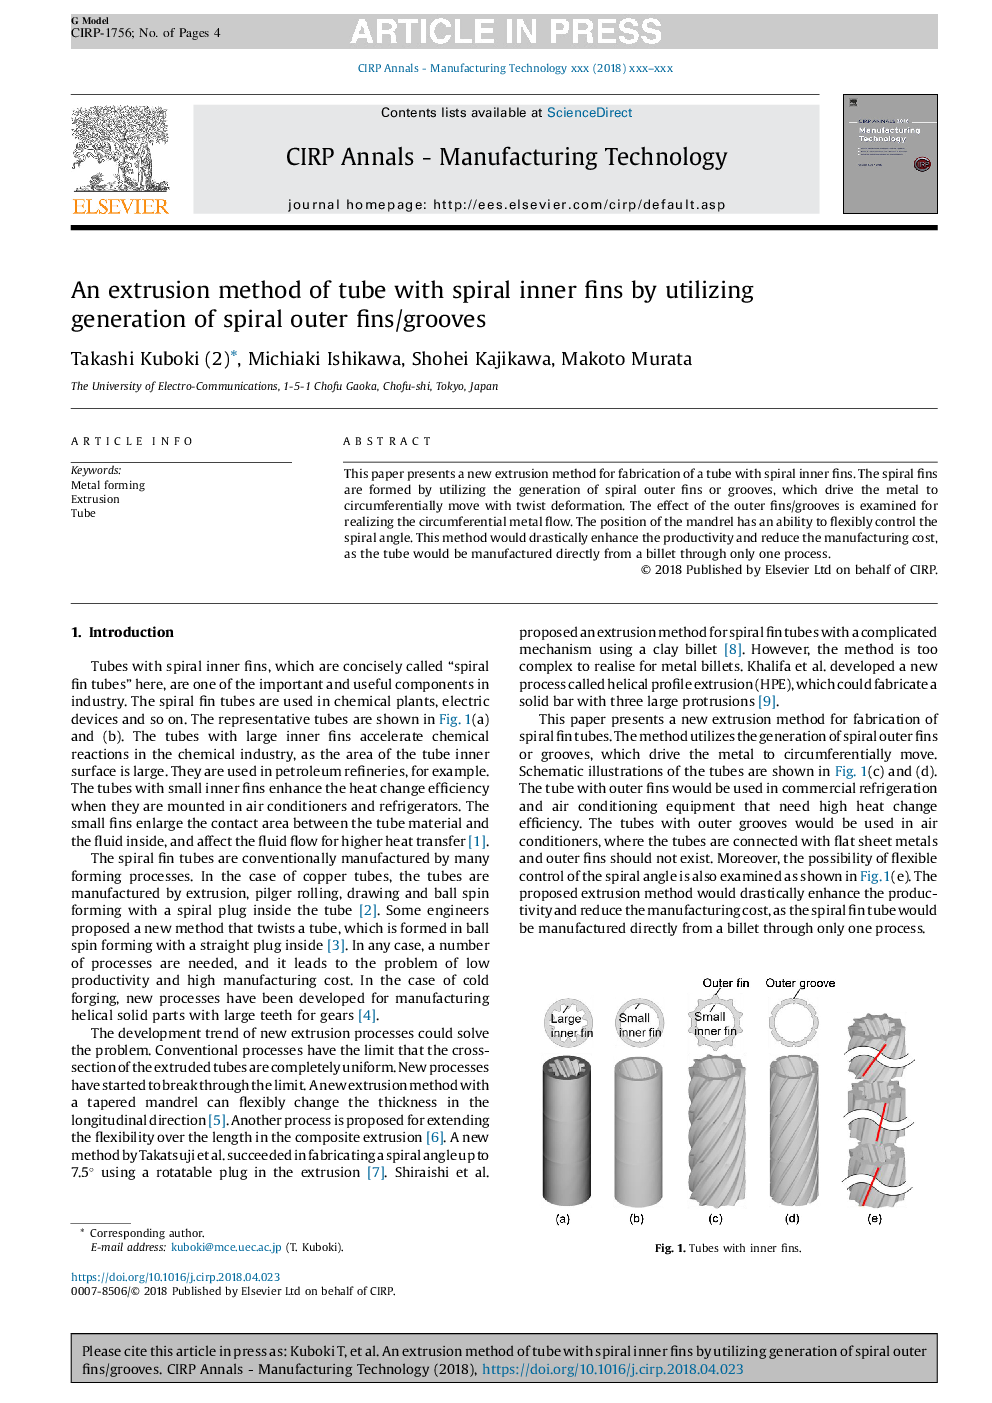 روش فرم‌دهی (اکستروژن) لوله با پره‌های مارپیچی داخلی با بهره‌گیری از ایجاد پره / شیارهای مارپیچی خارجی